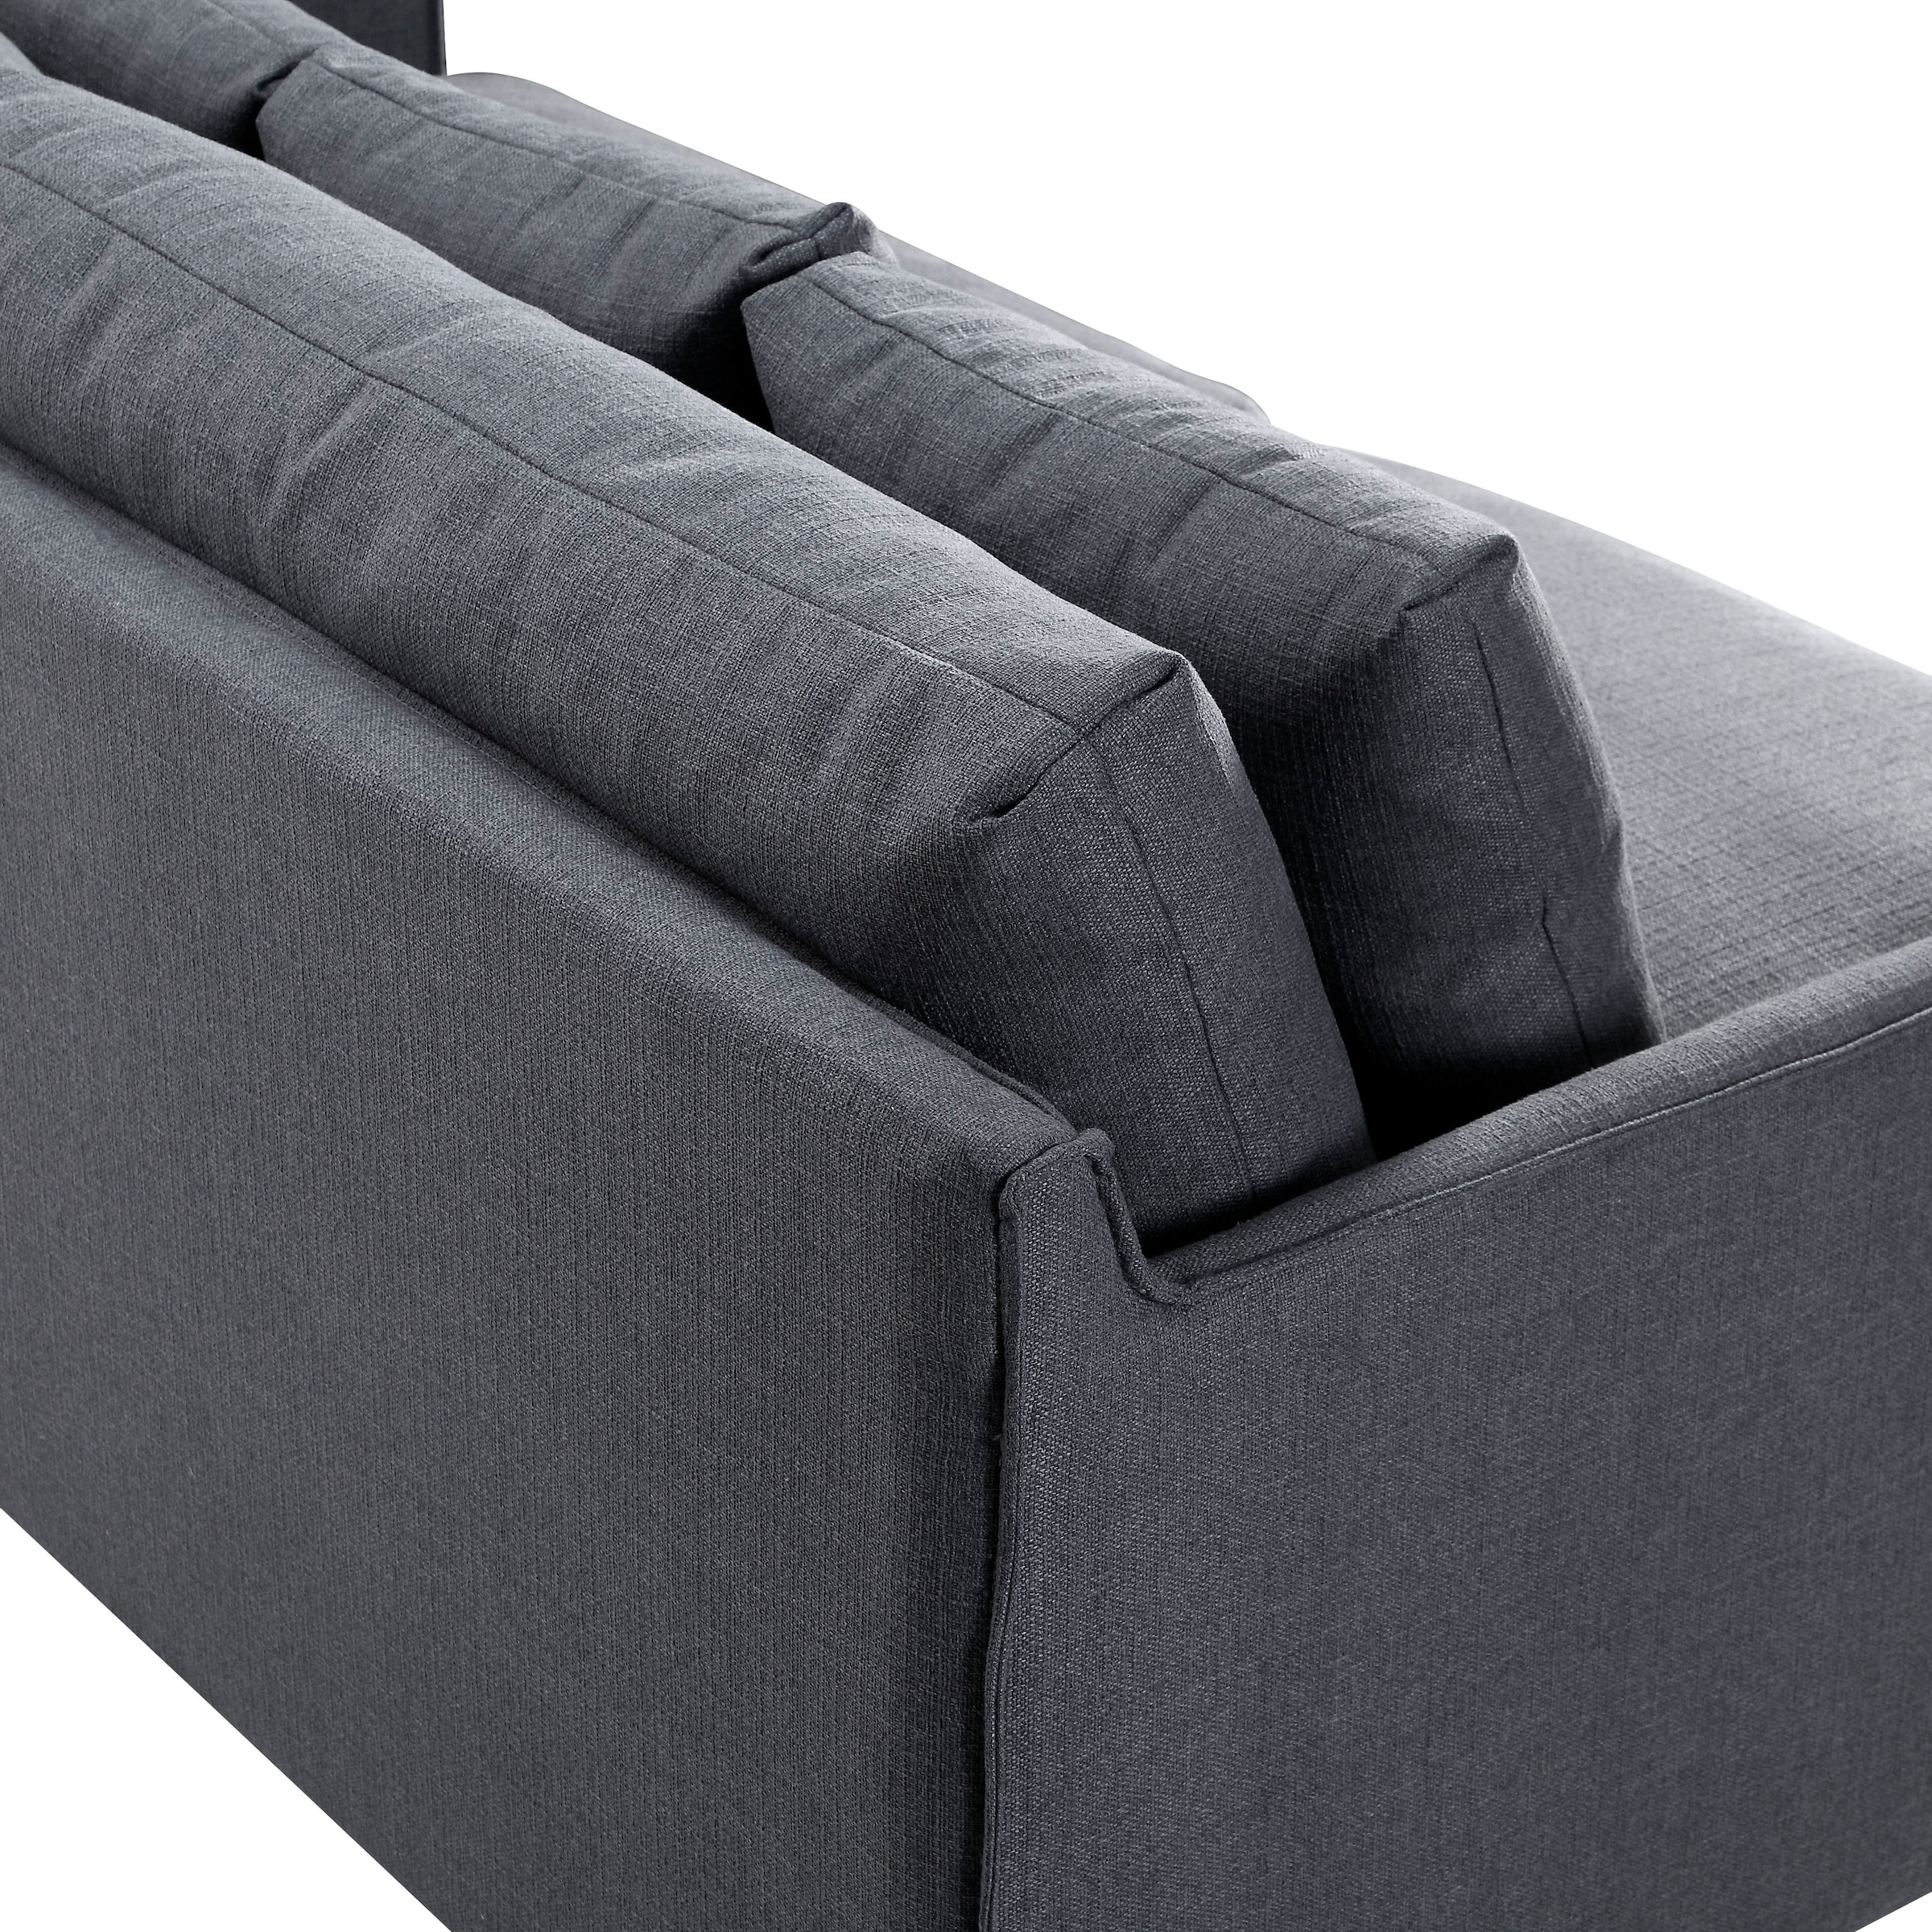 ATLANTIC home collection | Füllung bestellen skandinvisch BAUR mit extra Sofa, Design, weich, 3-Sitzer, Federn im